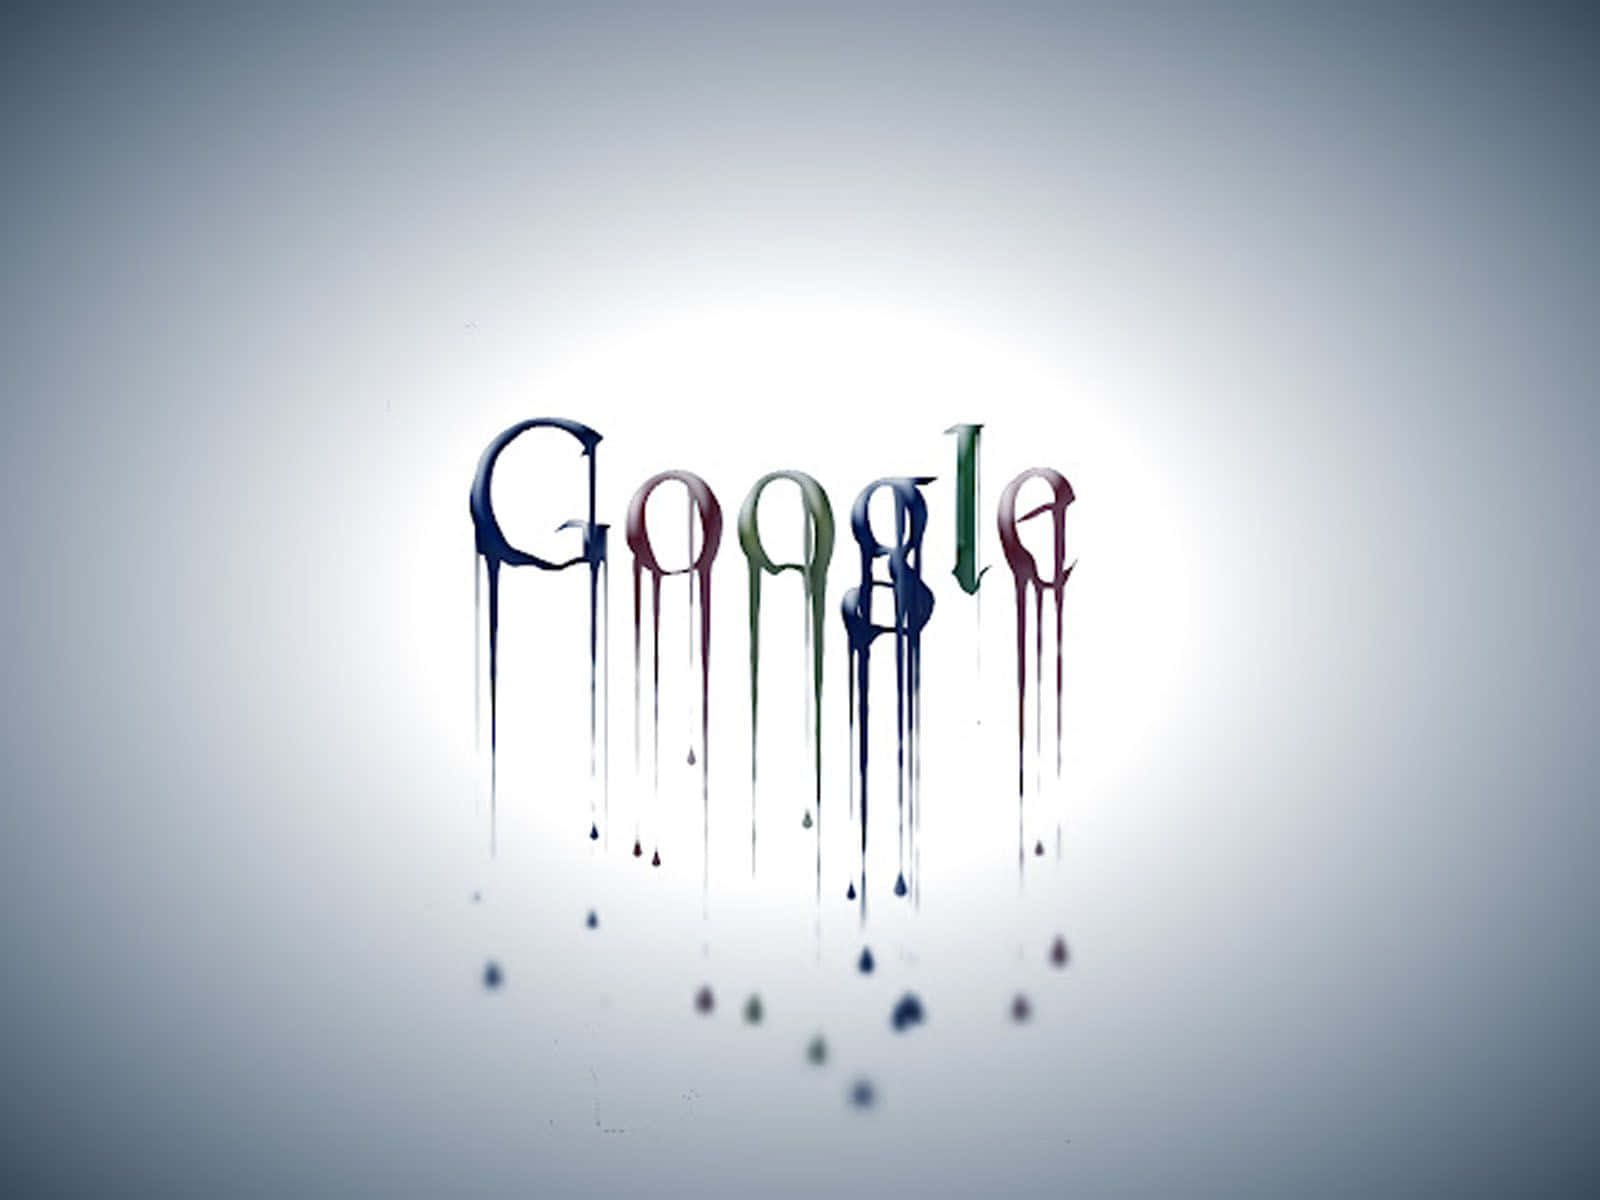 Googlelogotypen Med Droppande Vatten. Wallpaper